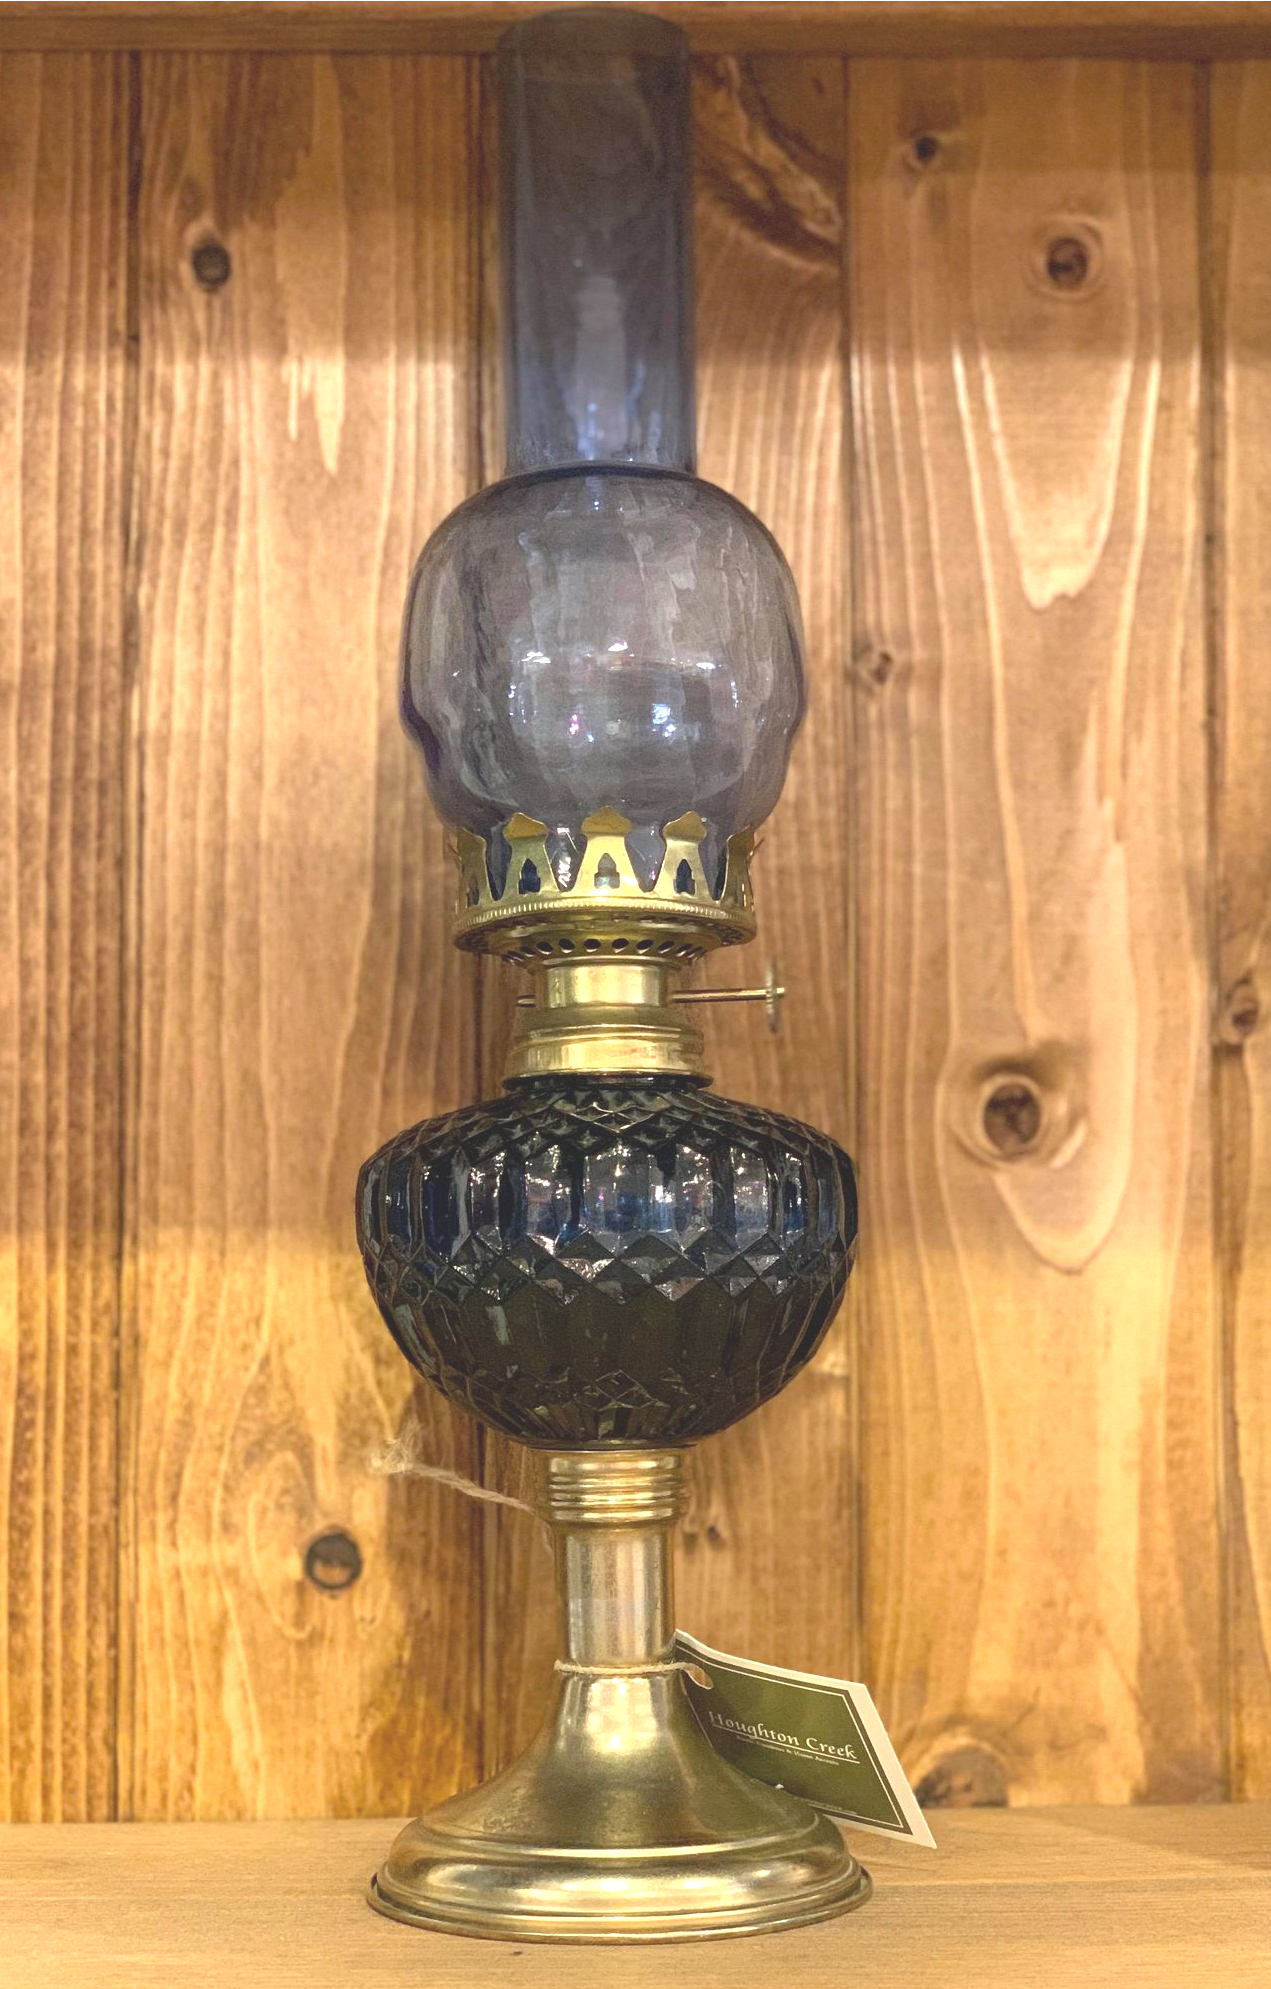 Vintage Cobalt Oil Lamp
$69.99